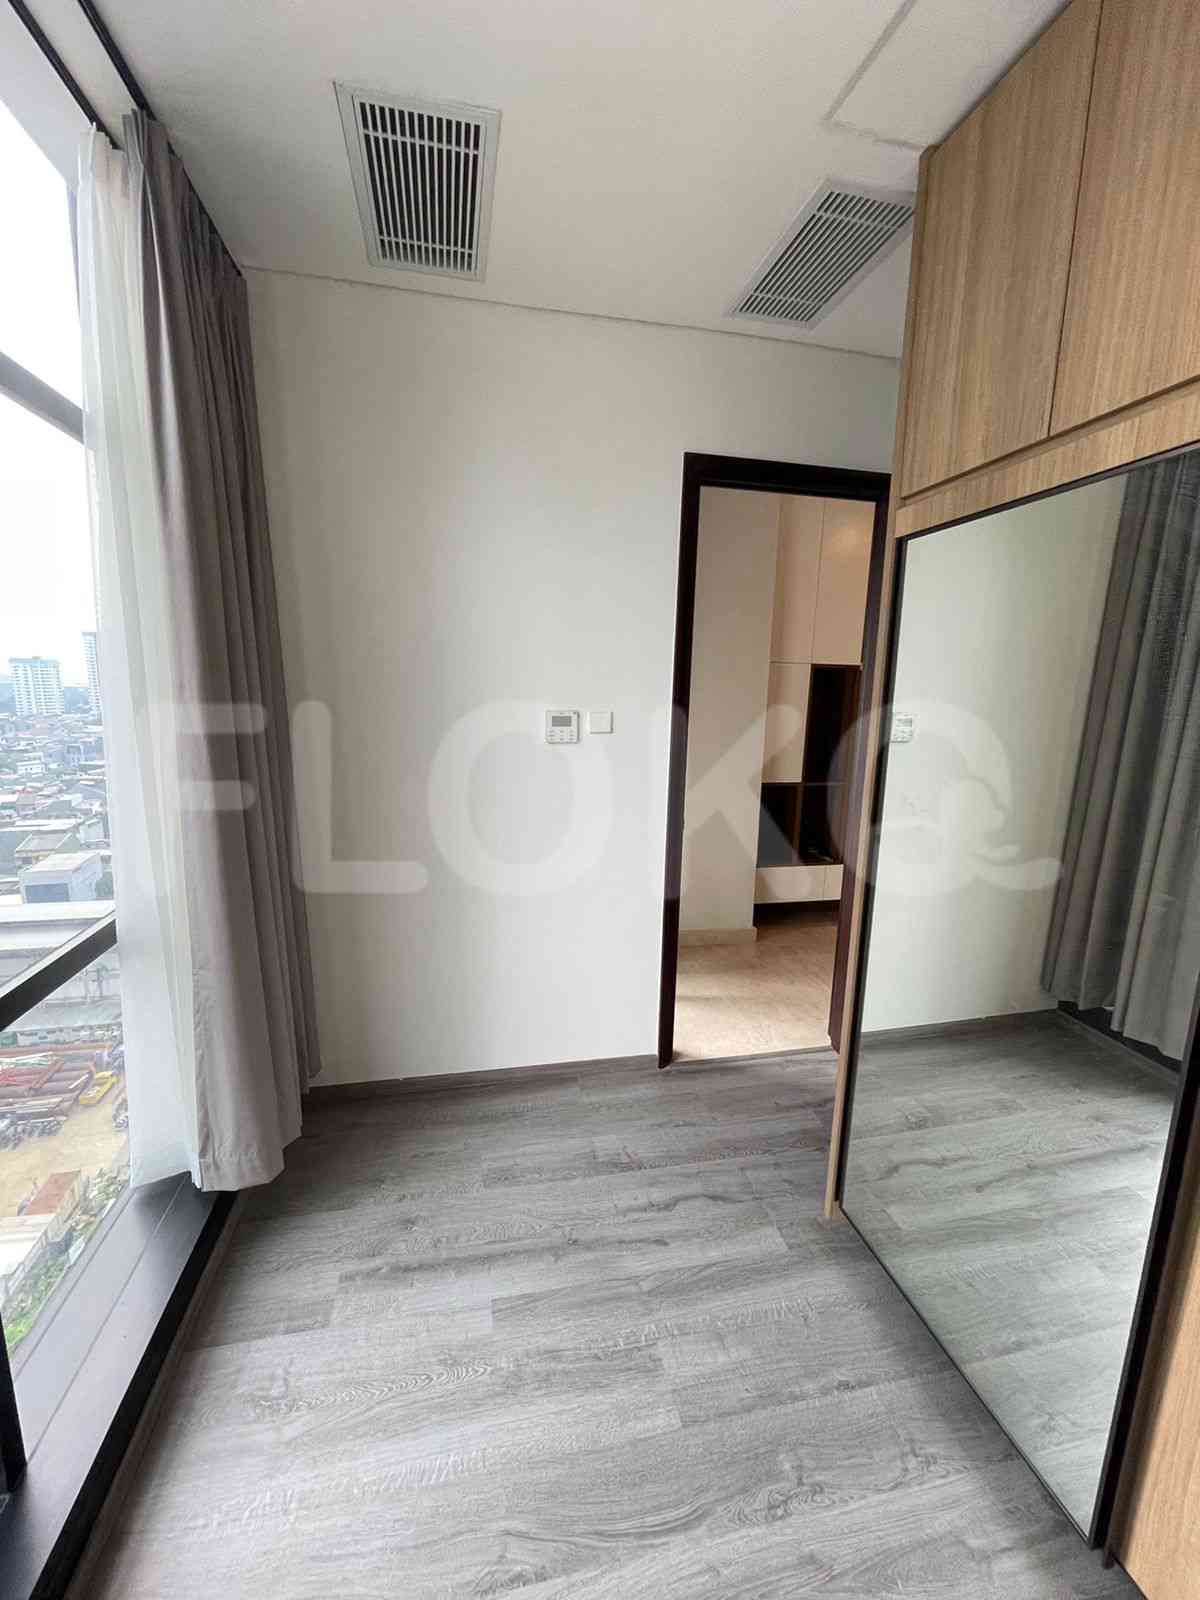 3 Bedroom on 10th Floor for Rent in Sudirman Suites Jakarta - fsuaf7 13